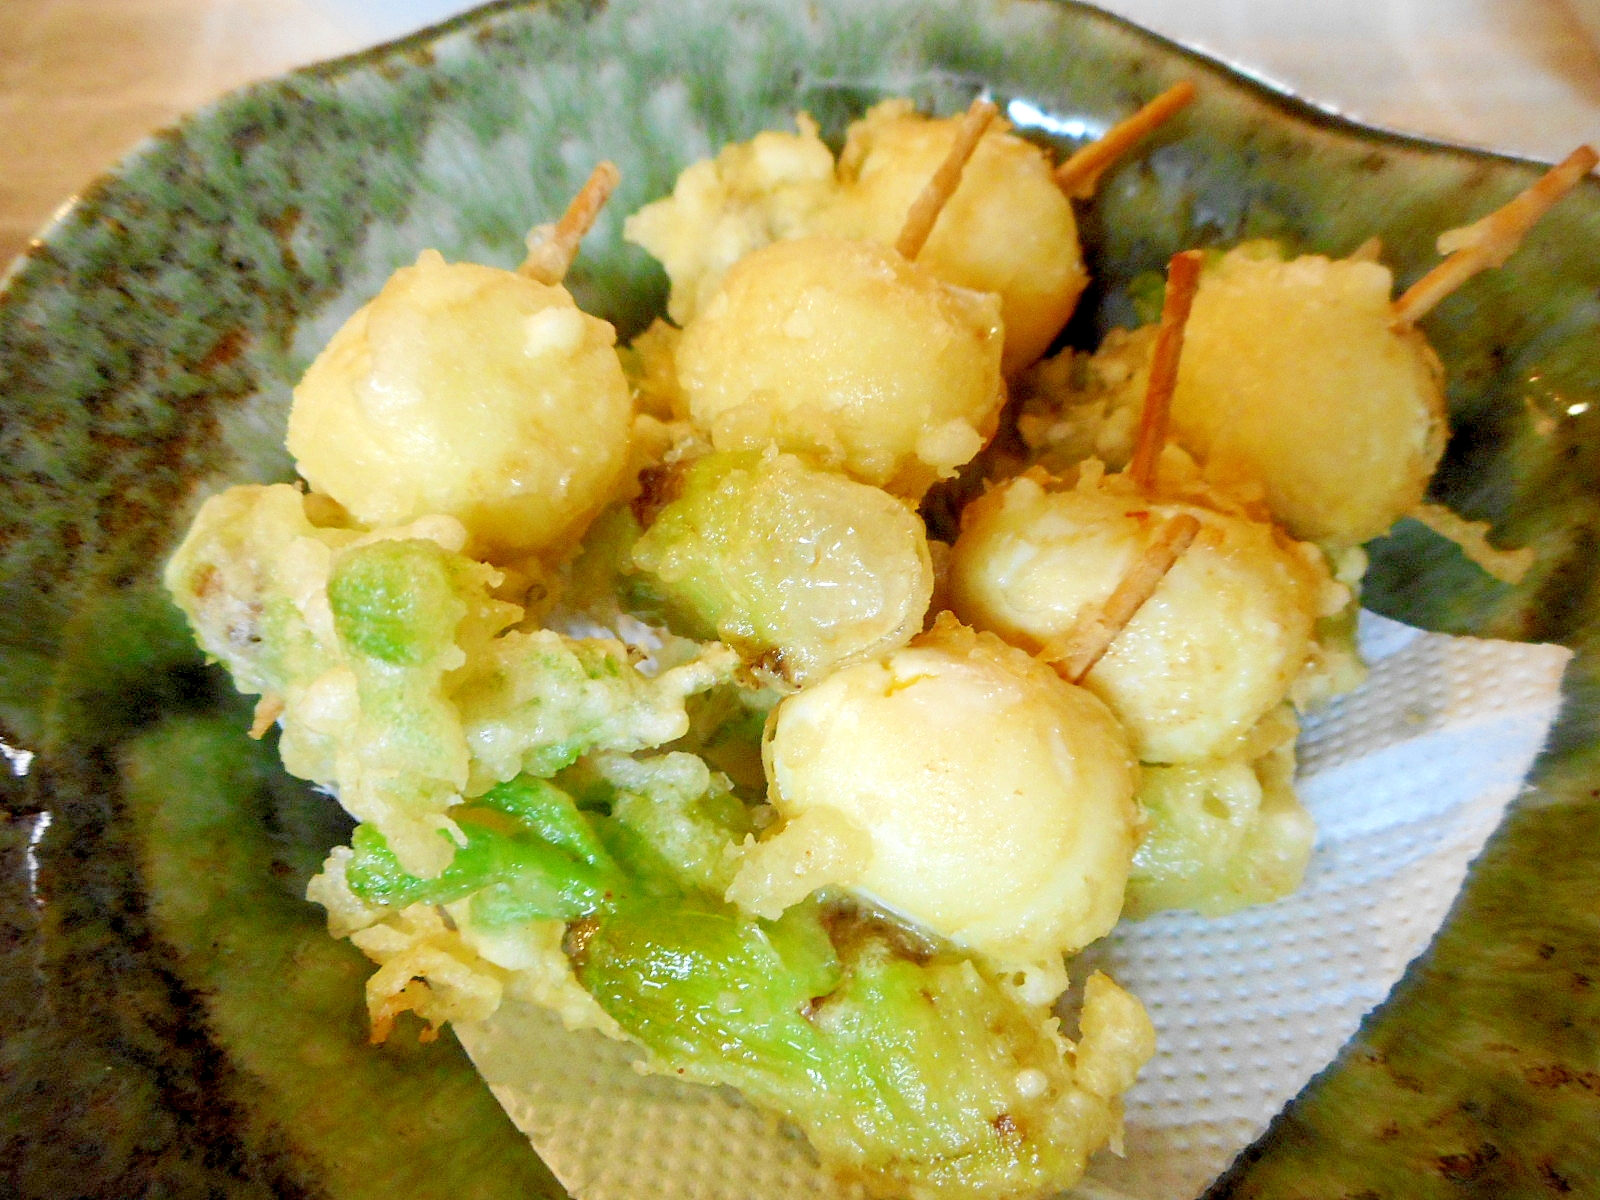 タラの芽とうずら卵の天ぷら